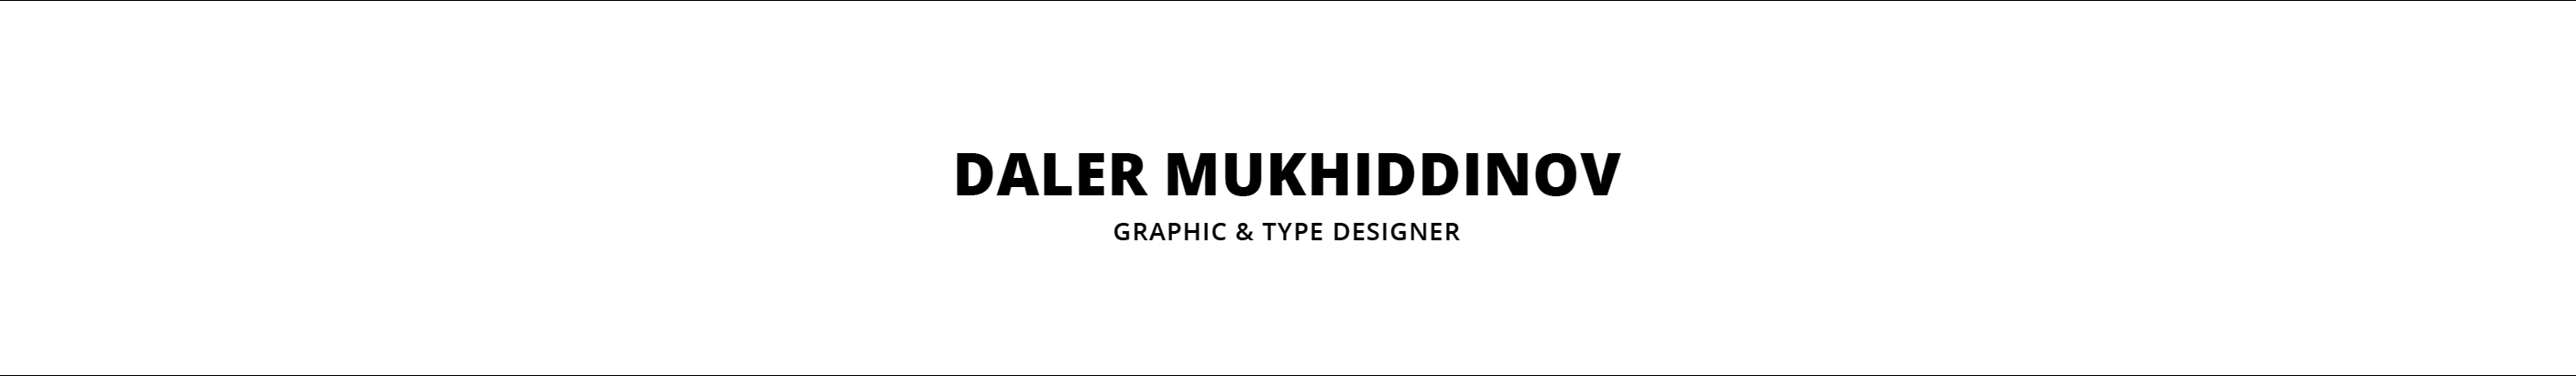 Daler Mukhiddinov's profile banner